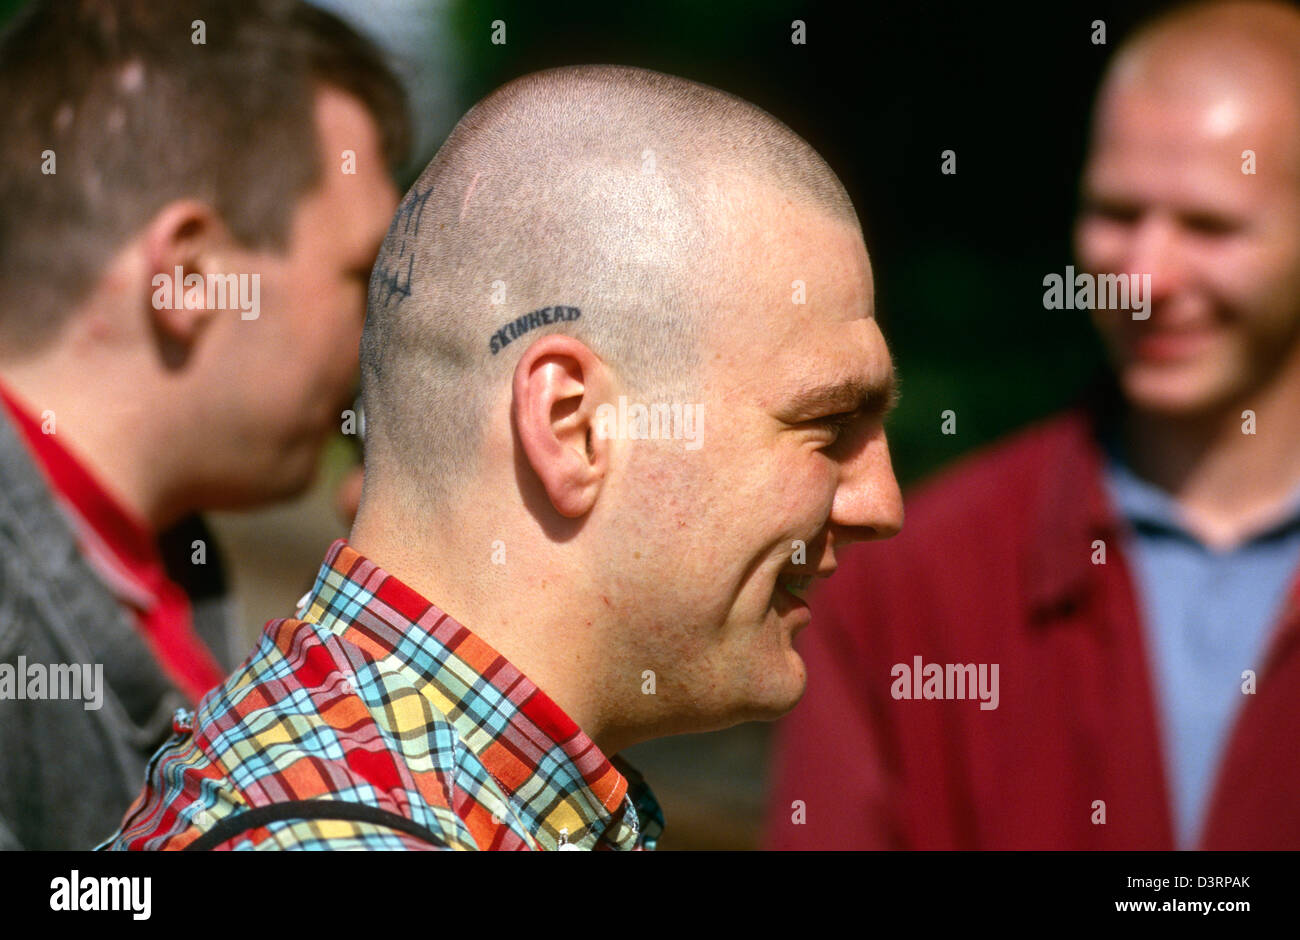 Oi !-La réunion, un jeune homme avec le mot SKINHEAD tatoué sur sa tête, Luebeck, Allemagne Banque D'Images